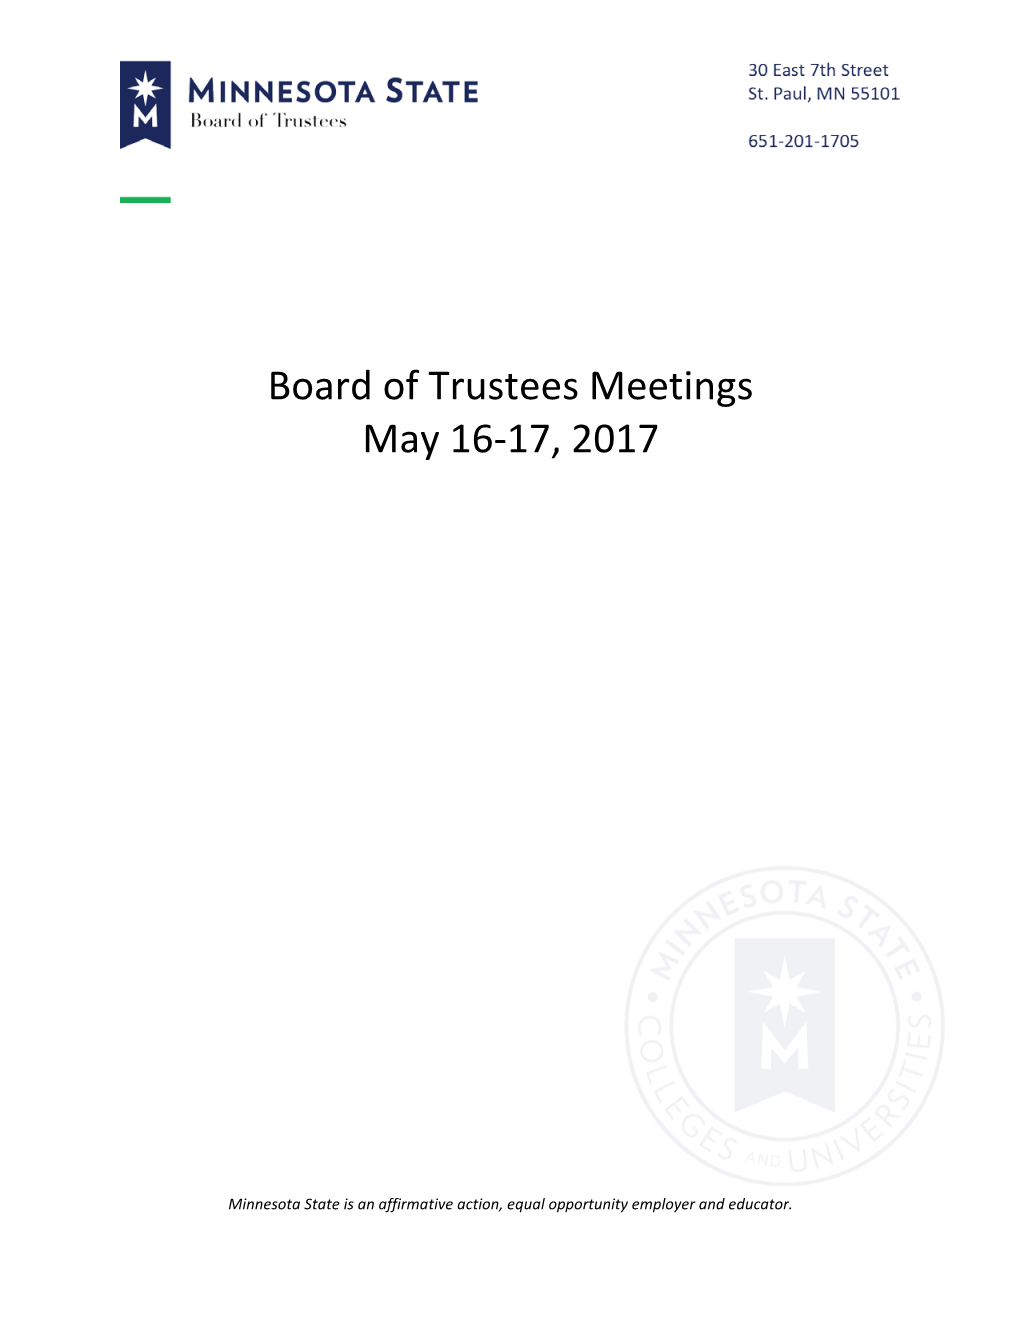 Board of Trustees Meetings May 16-17, 2017